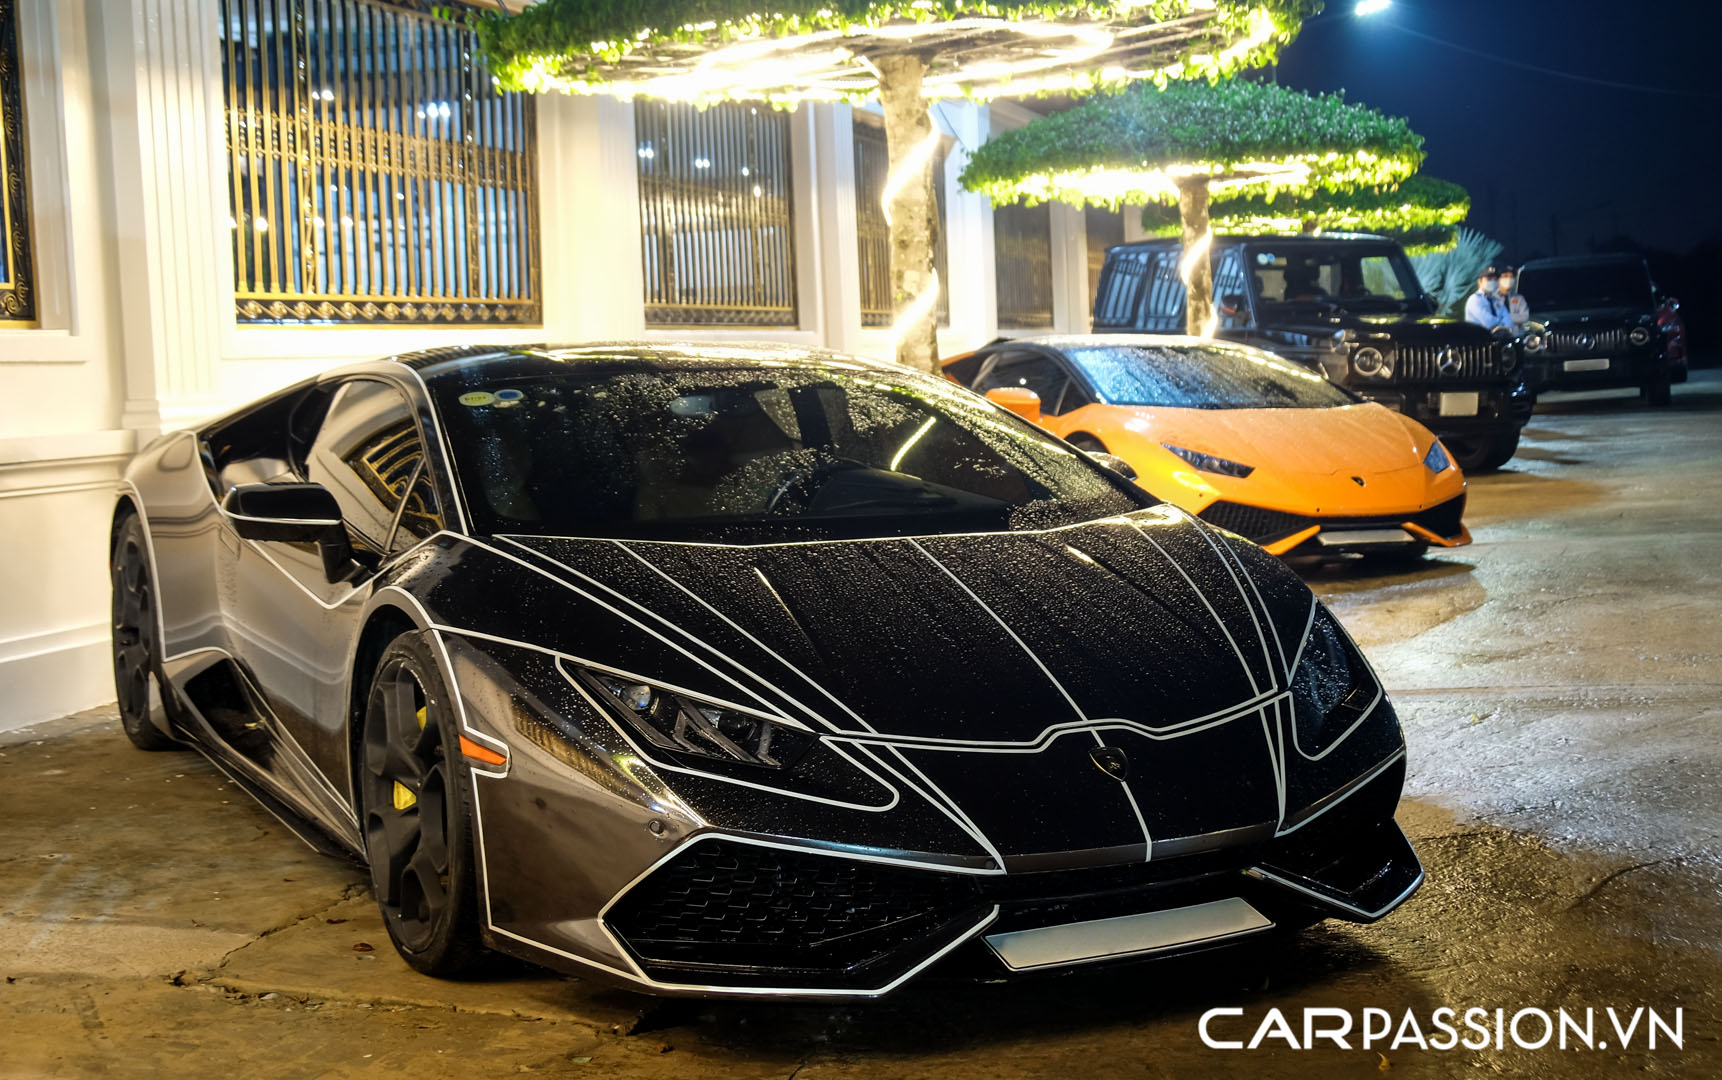 CP-Bộ đôi Lamborghini Huracan độ độc đáo8.jpg